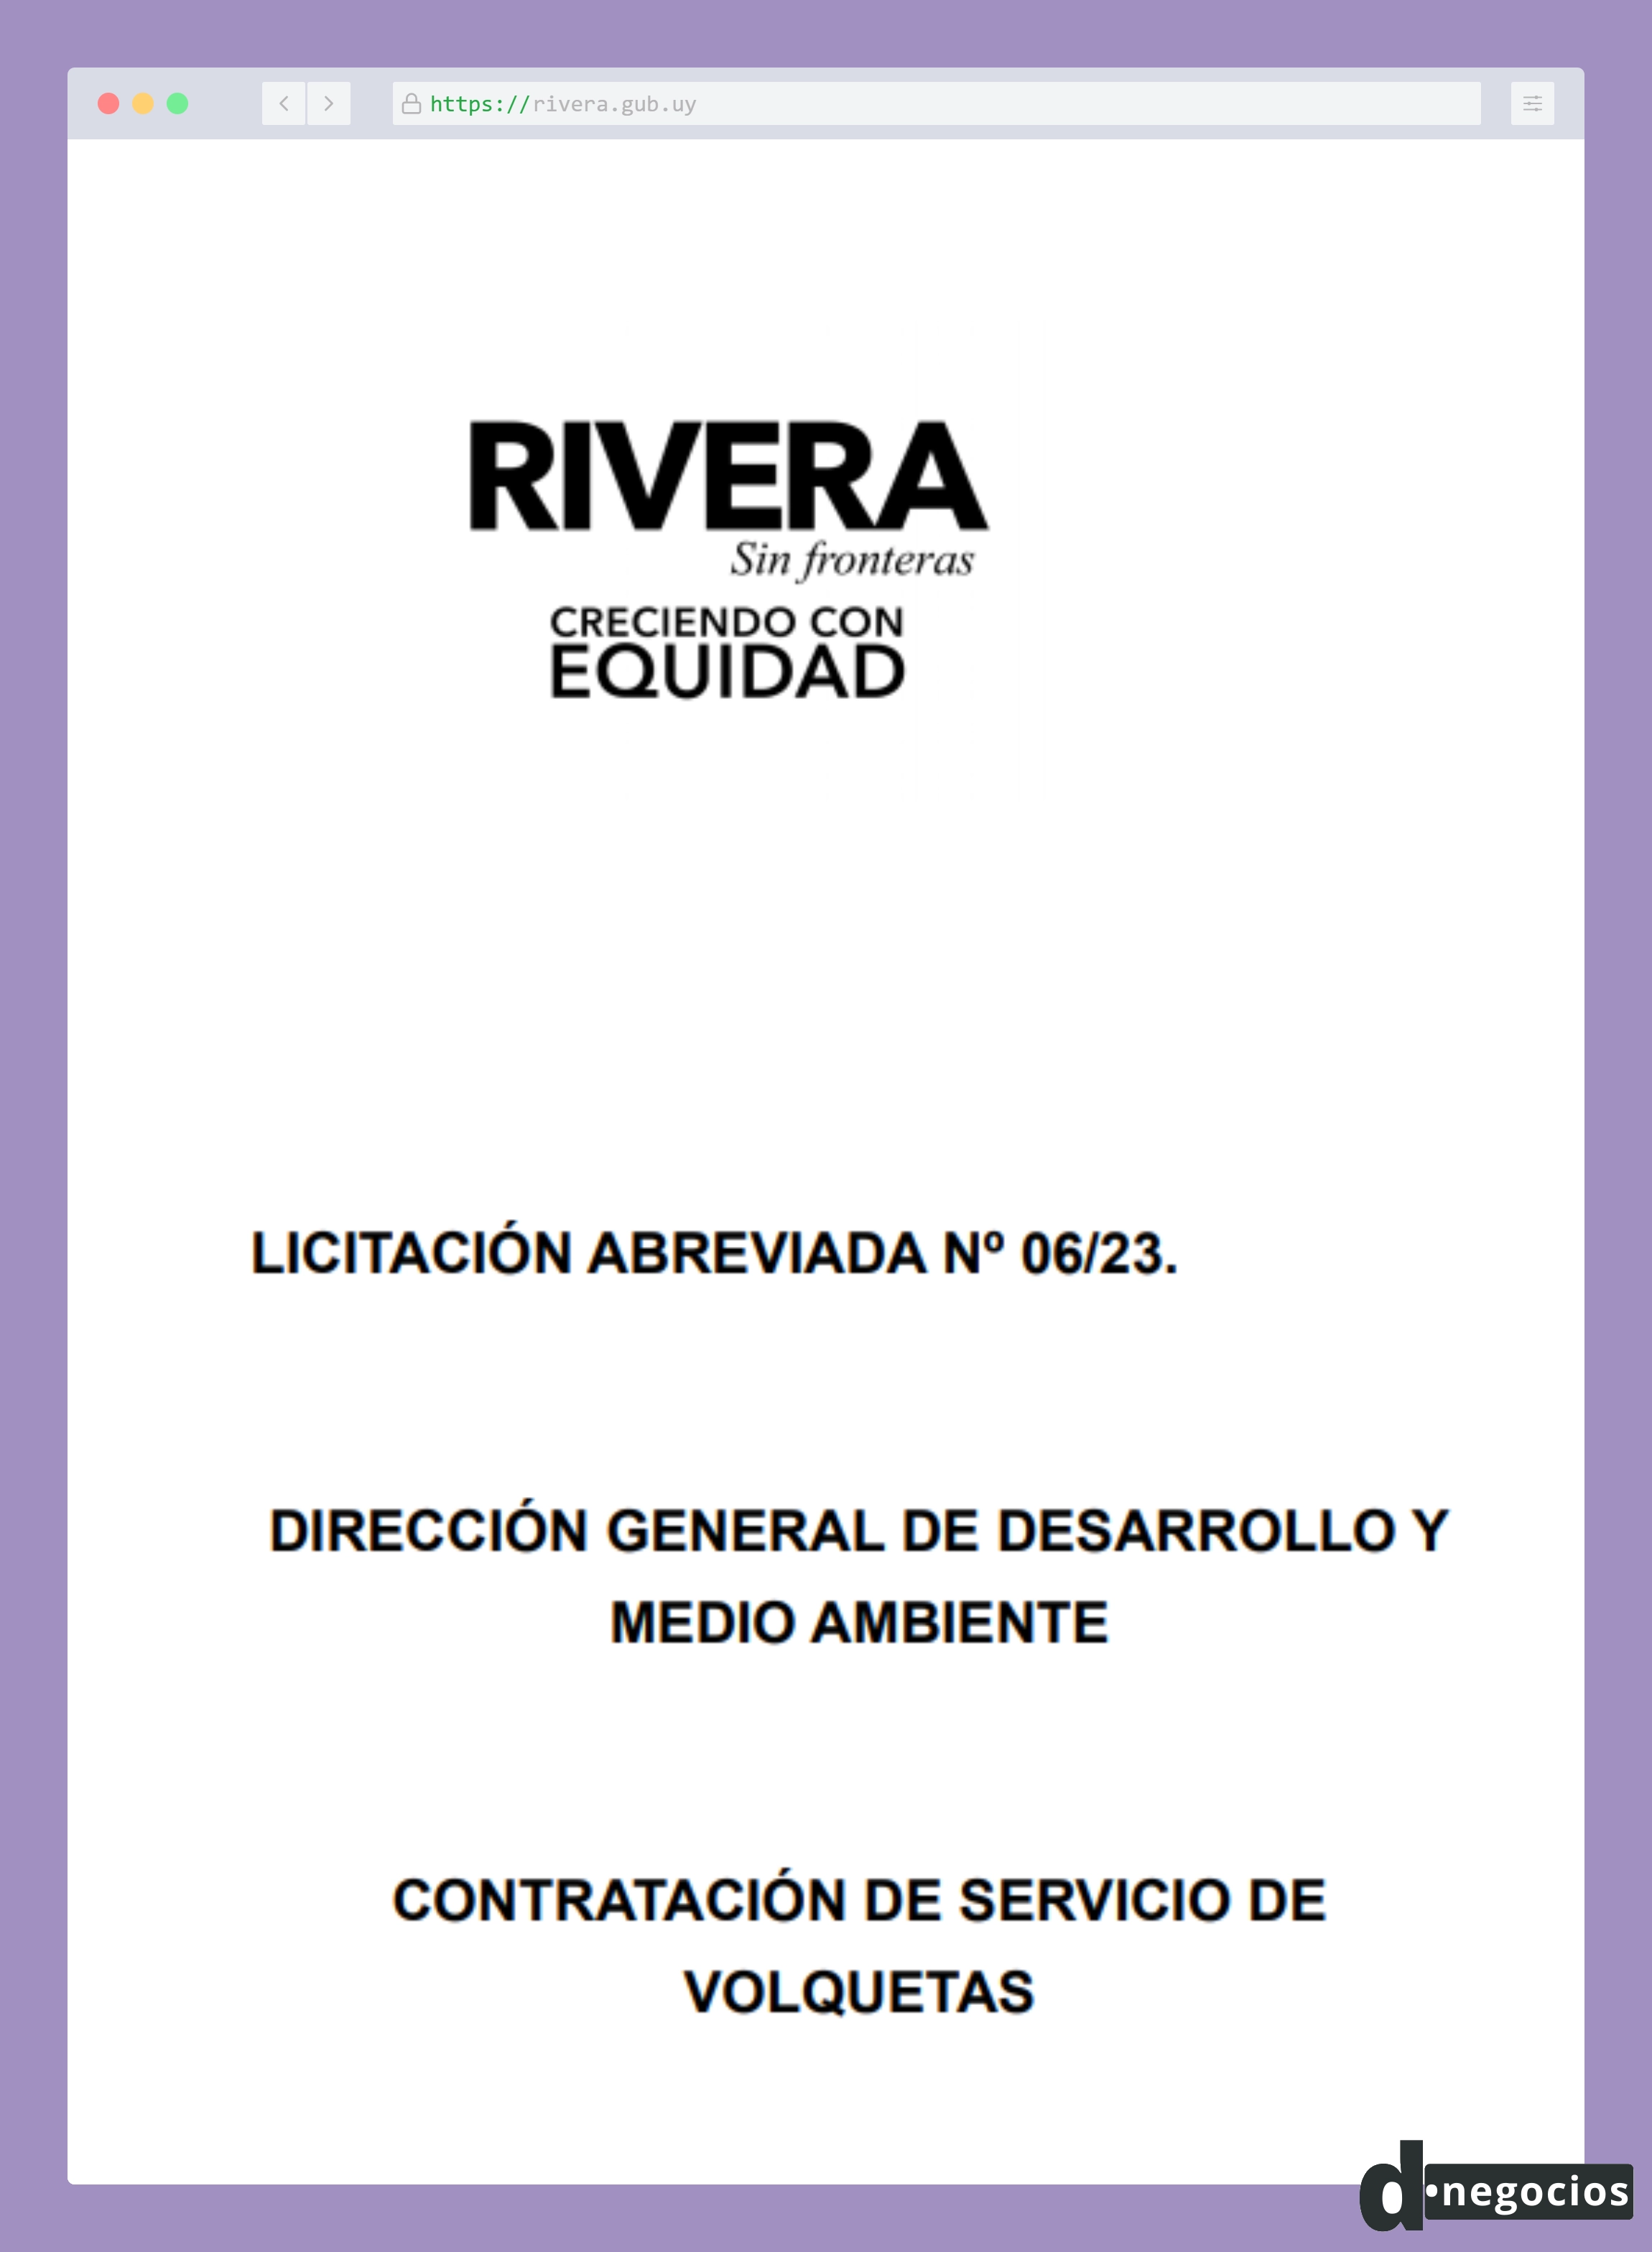 Llamado para la contratación de servicios de volquetas en Rivera.